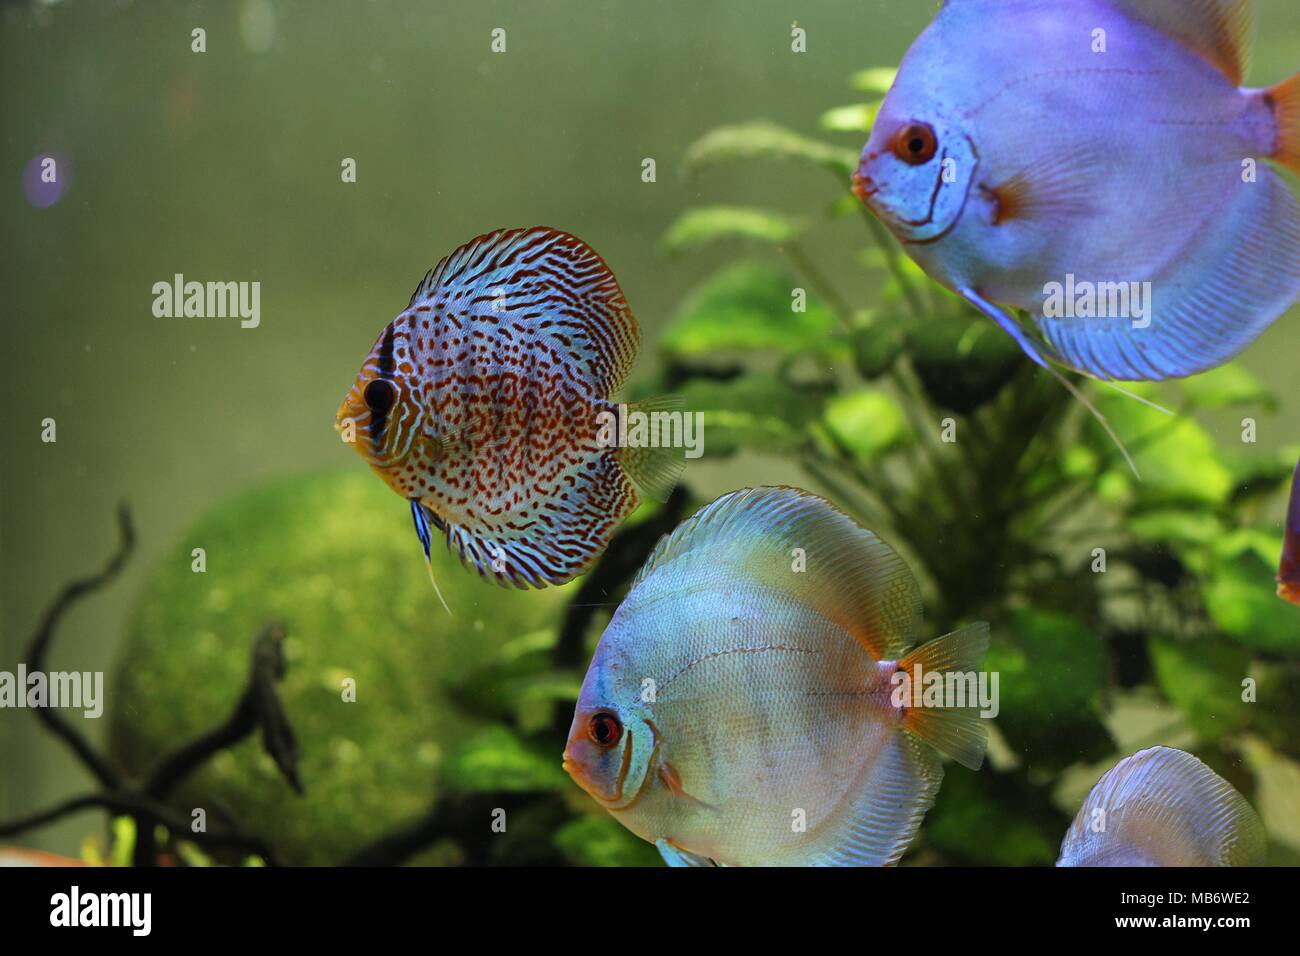 Blue discus and colorful discus fish (Symphysodon aequifasciatus) in aquarium Stock Photo